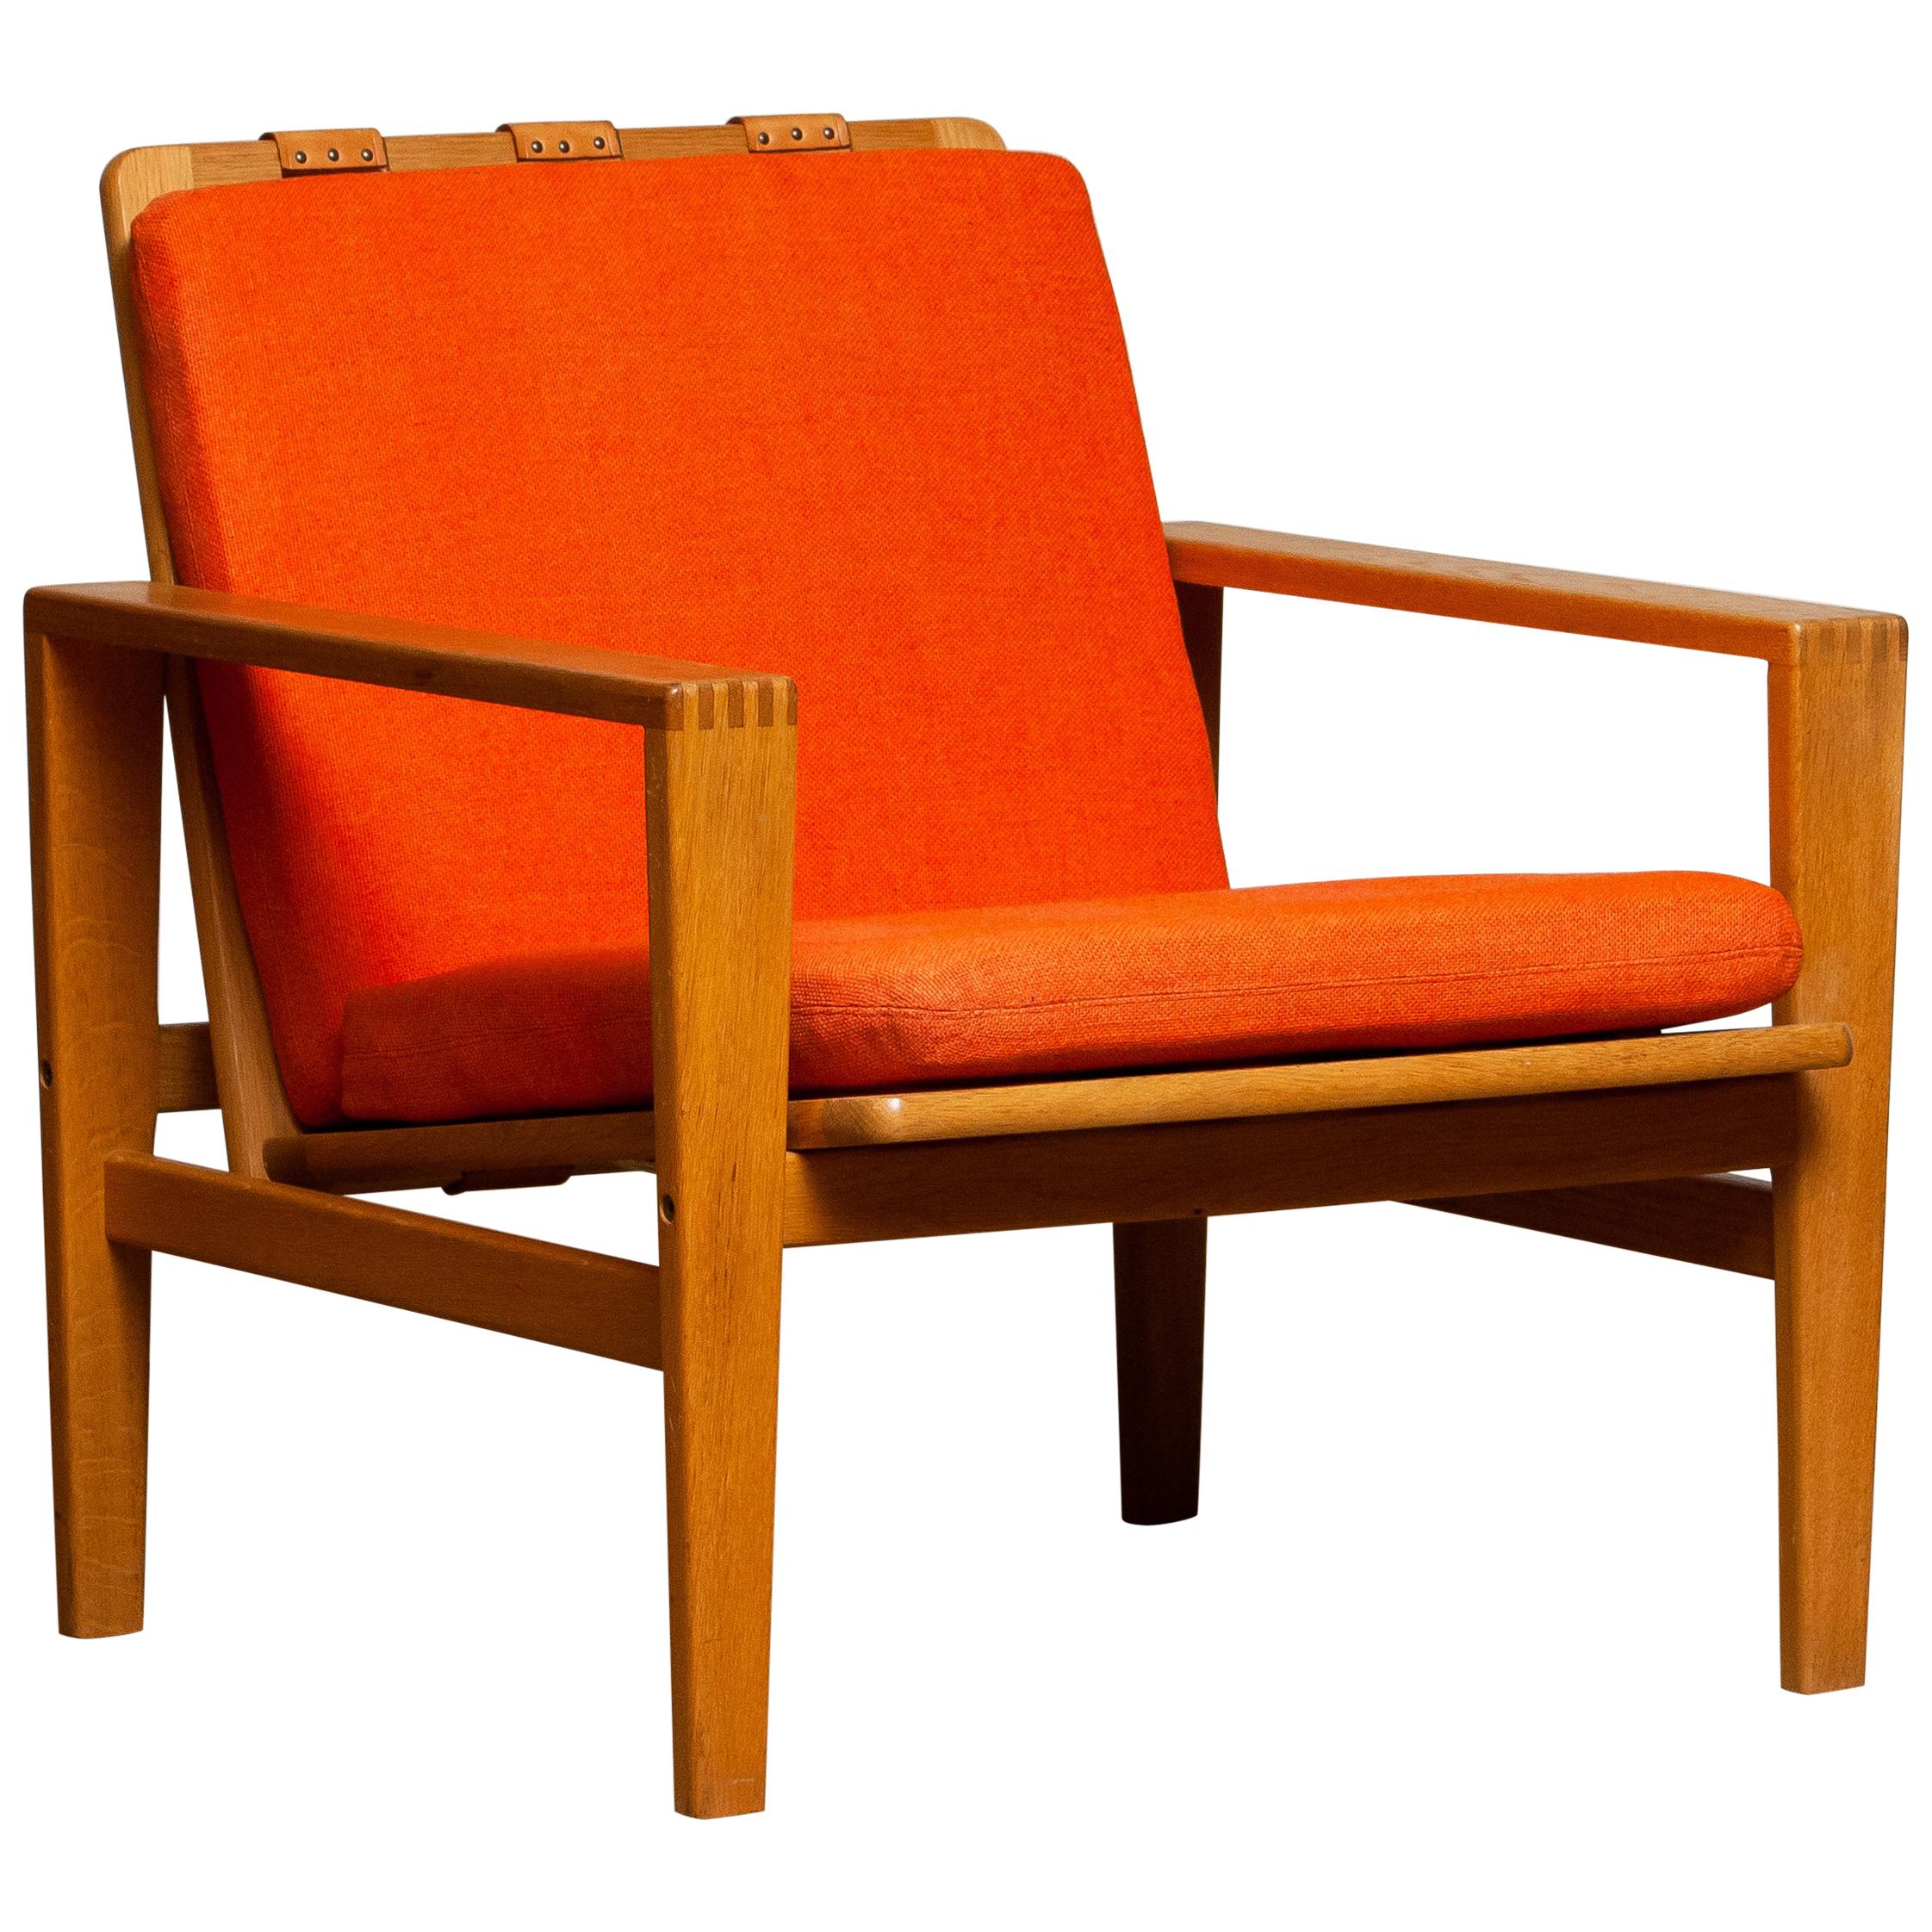 1960s Scandinavian Lounge Easy Chair in Oak / Leather by Erik Merthen for Ire.2